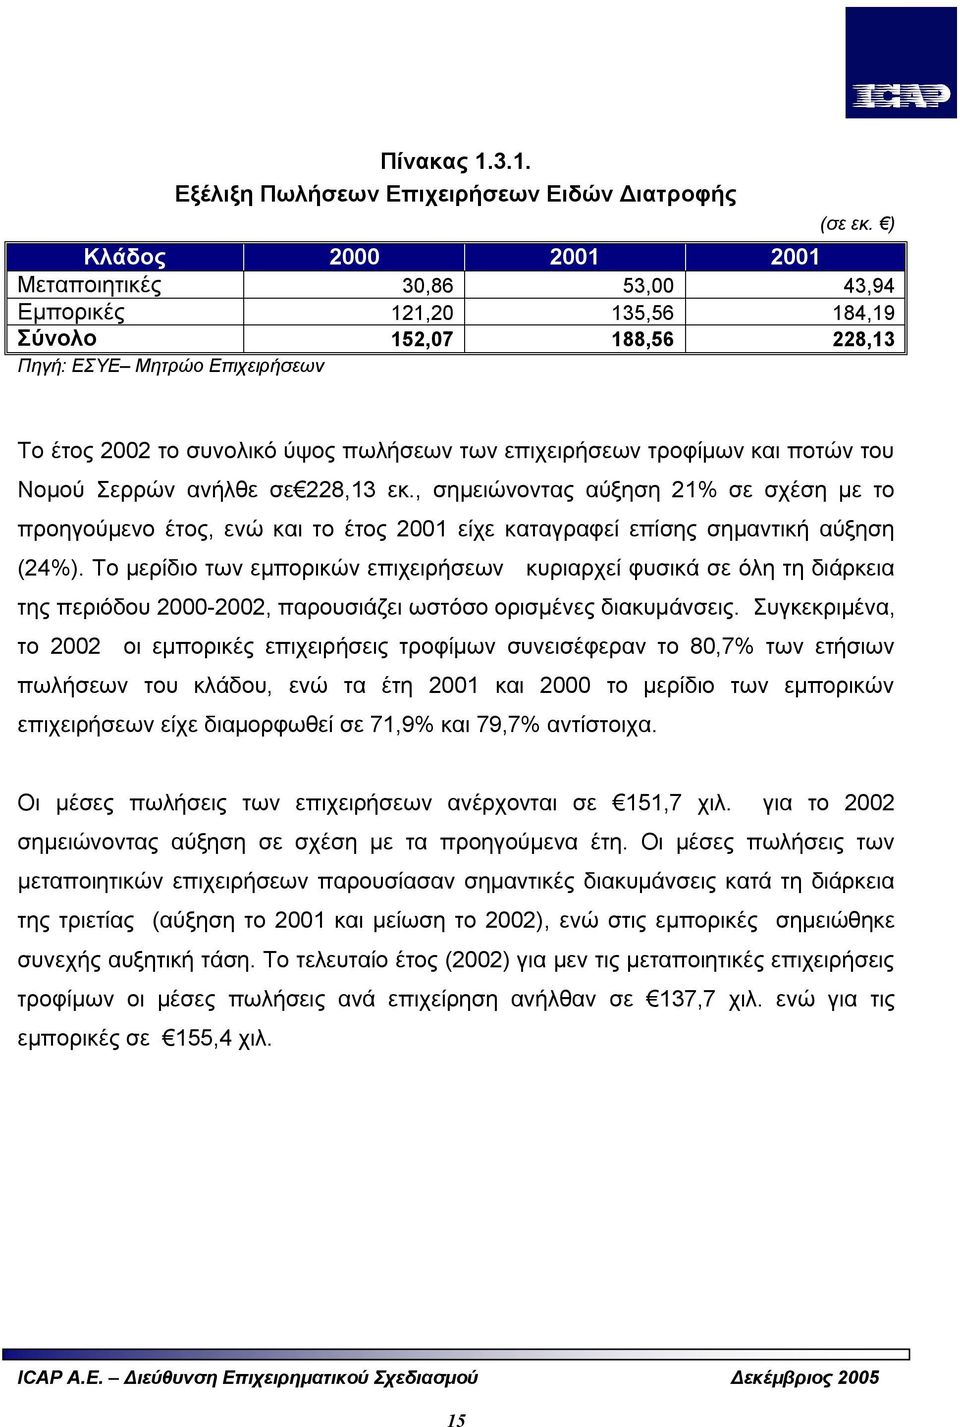 επιχειρήσεων τροφίμων και ποτών του Νομού Σερρών ανήλθε σε 228,13 εκ., σημειώνοντας αύξηση 21% σε σχέση με το προηγούμενο έτος, ενώ και το έτος 2001 είχε καταγραφεί επίσης σημαντική αύξηση (24%).